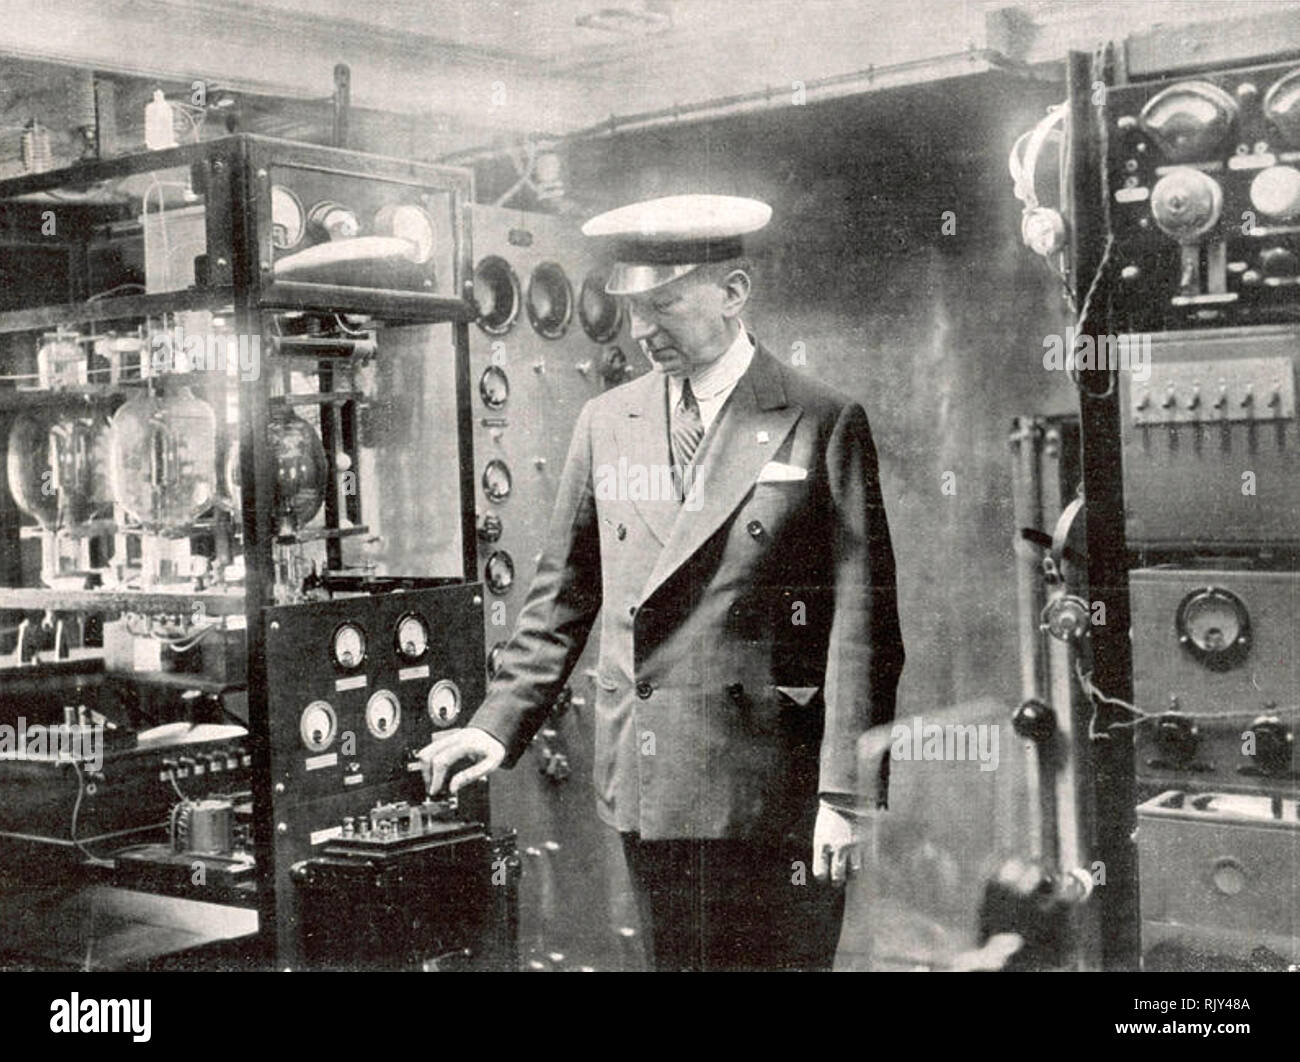 GUGLIELMO MARCONI (1874-1937) l'inventeur italien avec son expérimental la radio à ondes courtes à bord de son système d'émission 'yacht à vapeur Elettra' en 1923 Banque D'Images